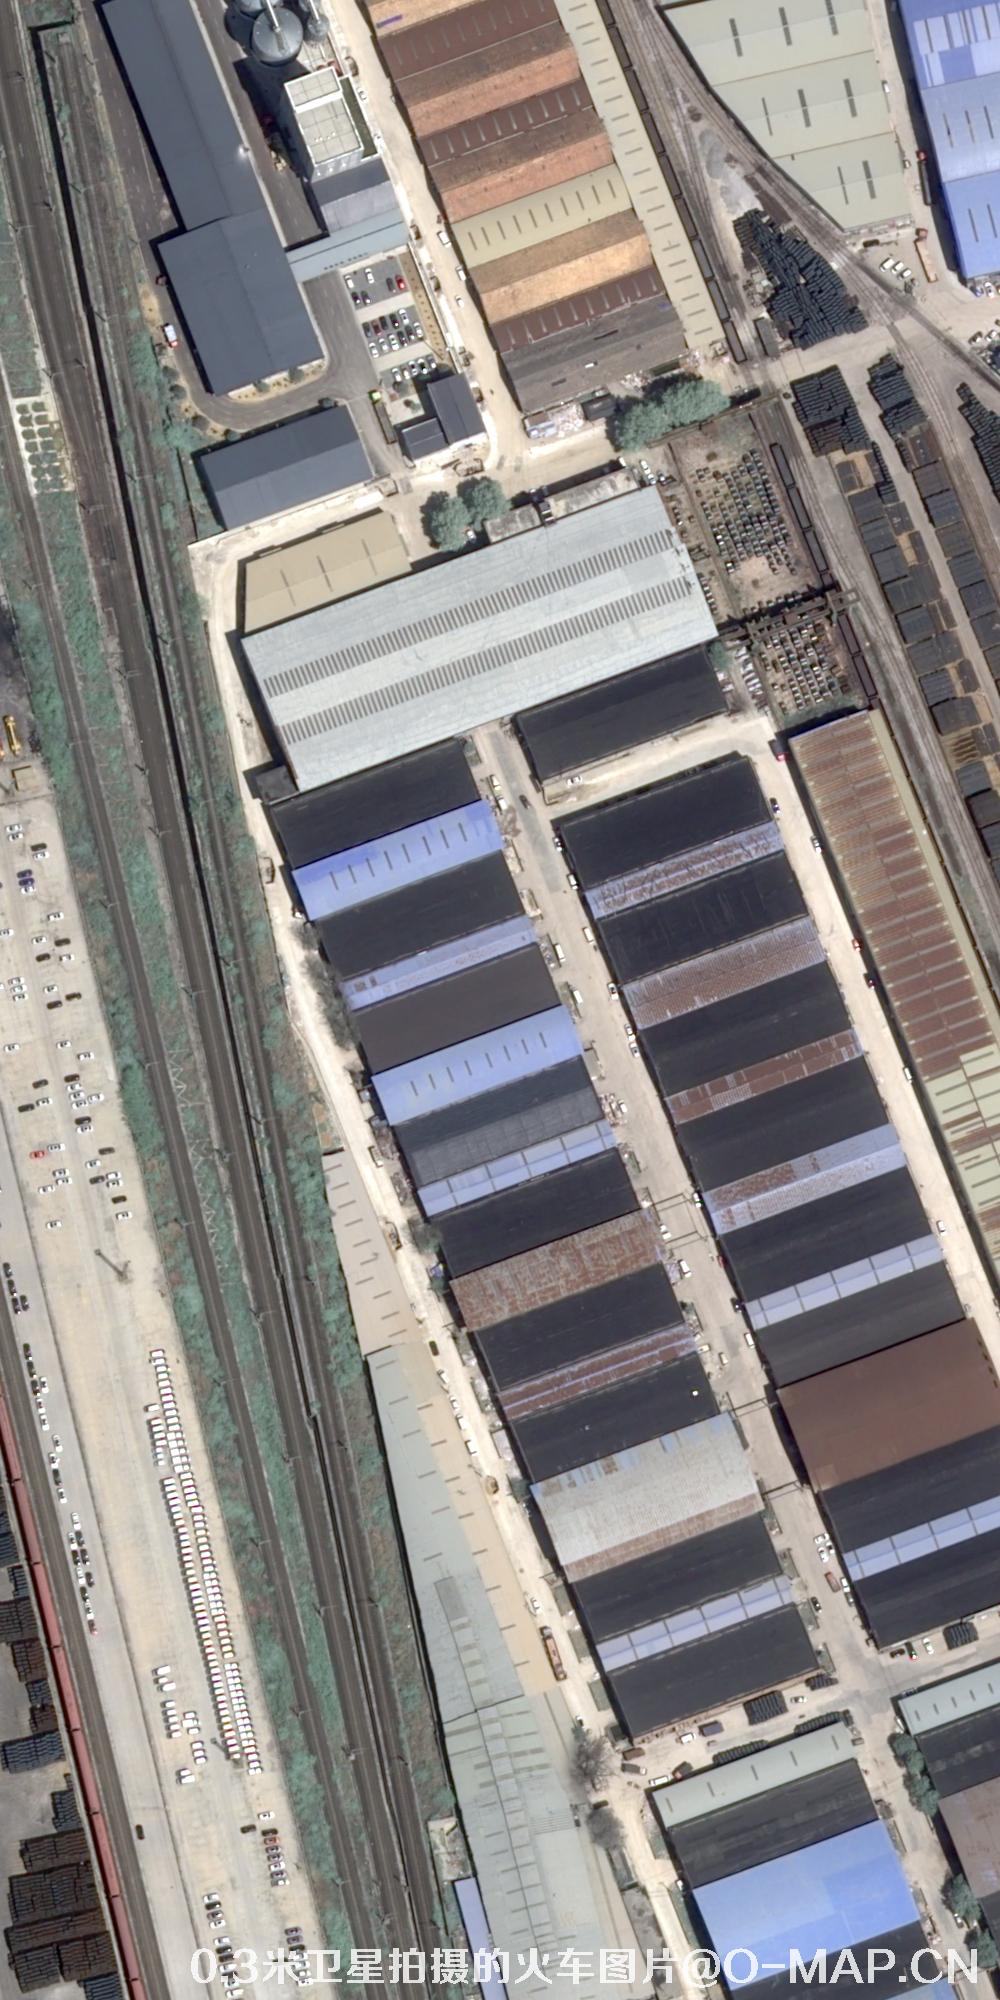 0.3米分辨率卫星拍摄的火车轨道高清图片